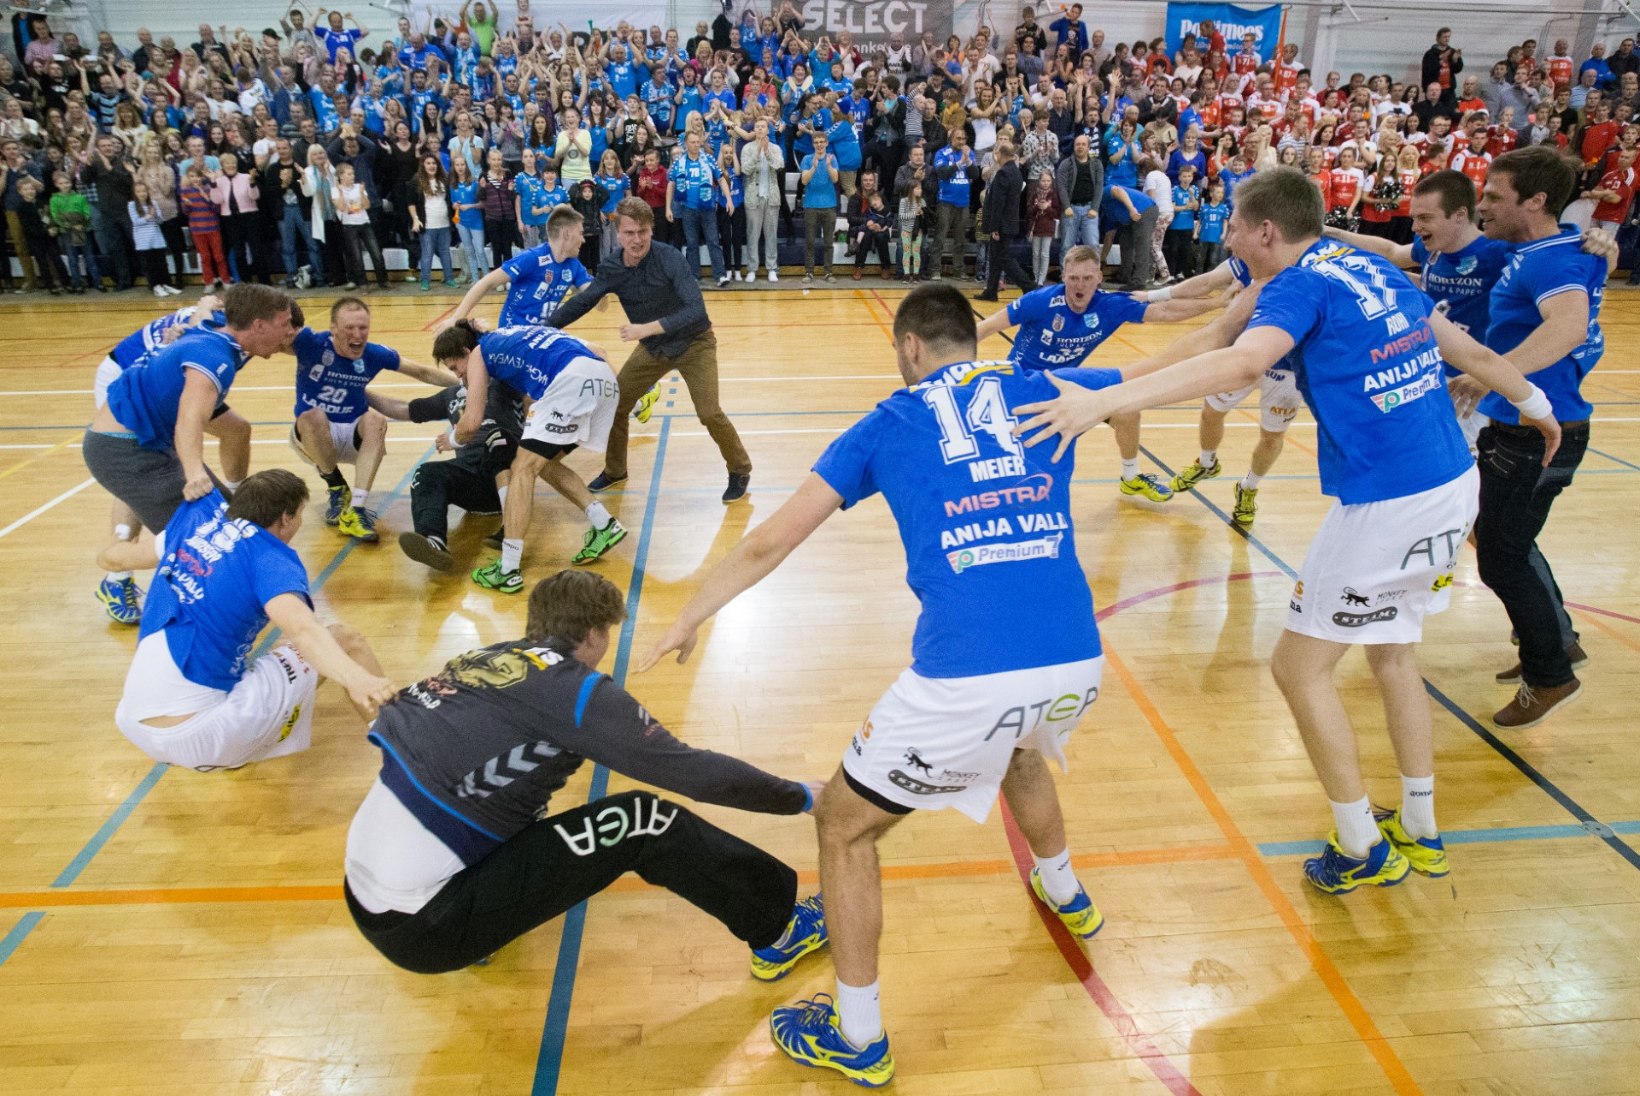 FOTOD: Kehra võitis jabura matši ja tuli 11. korda Eesti meistriks